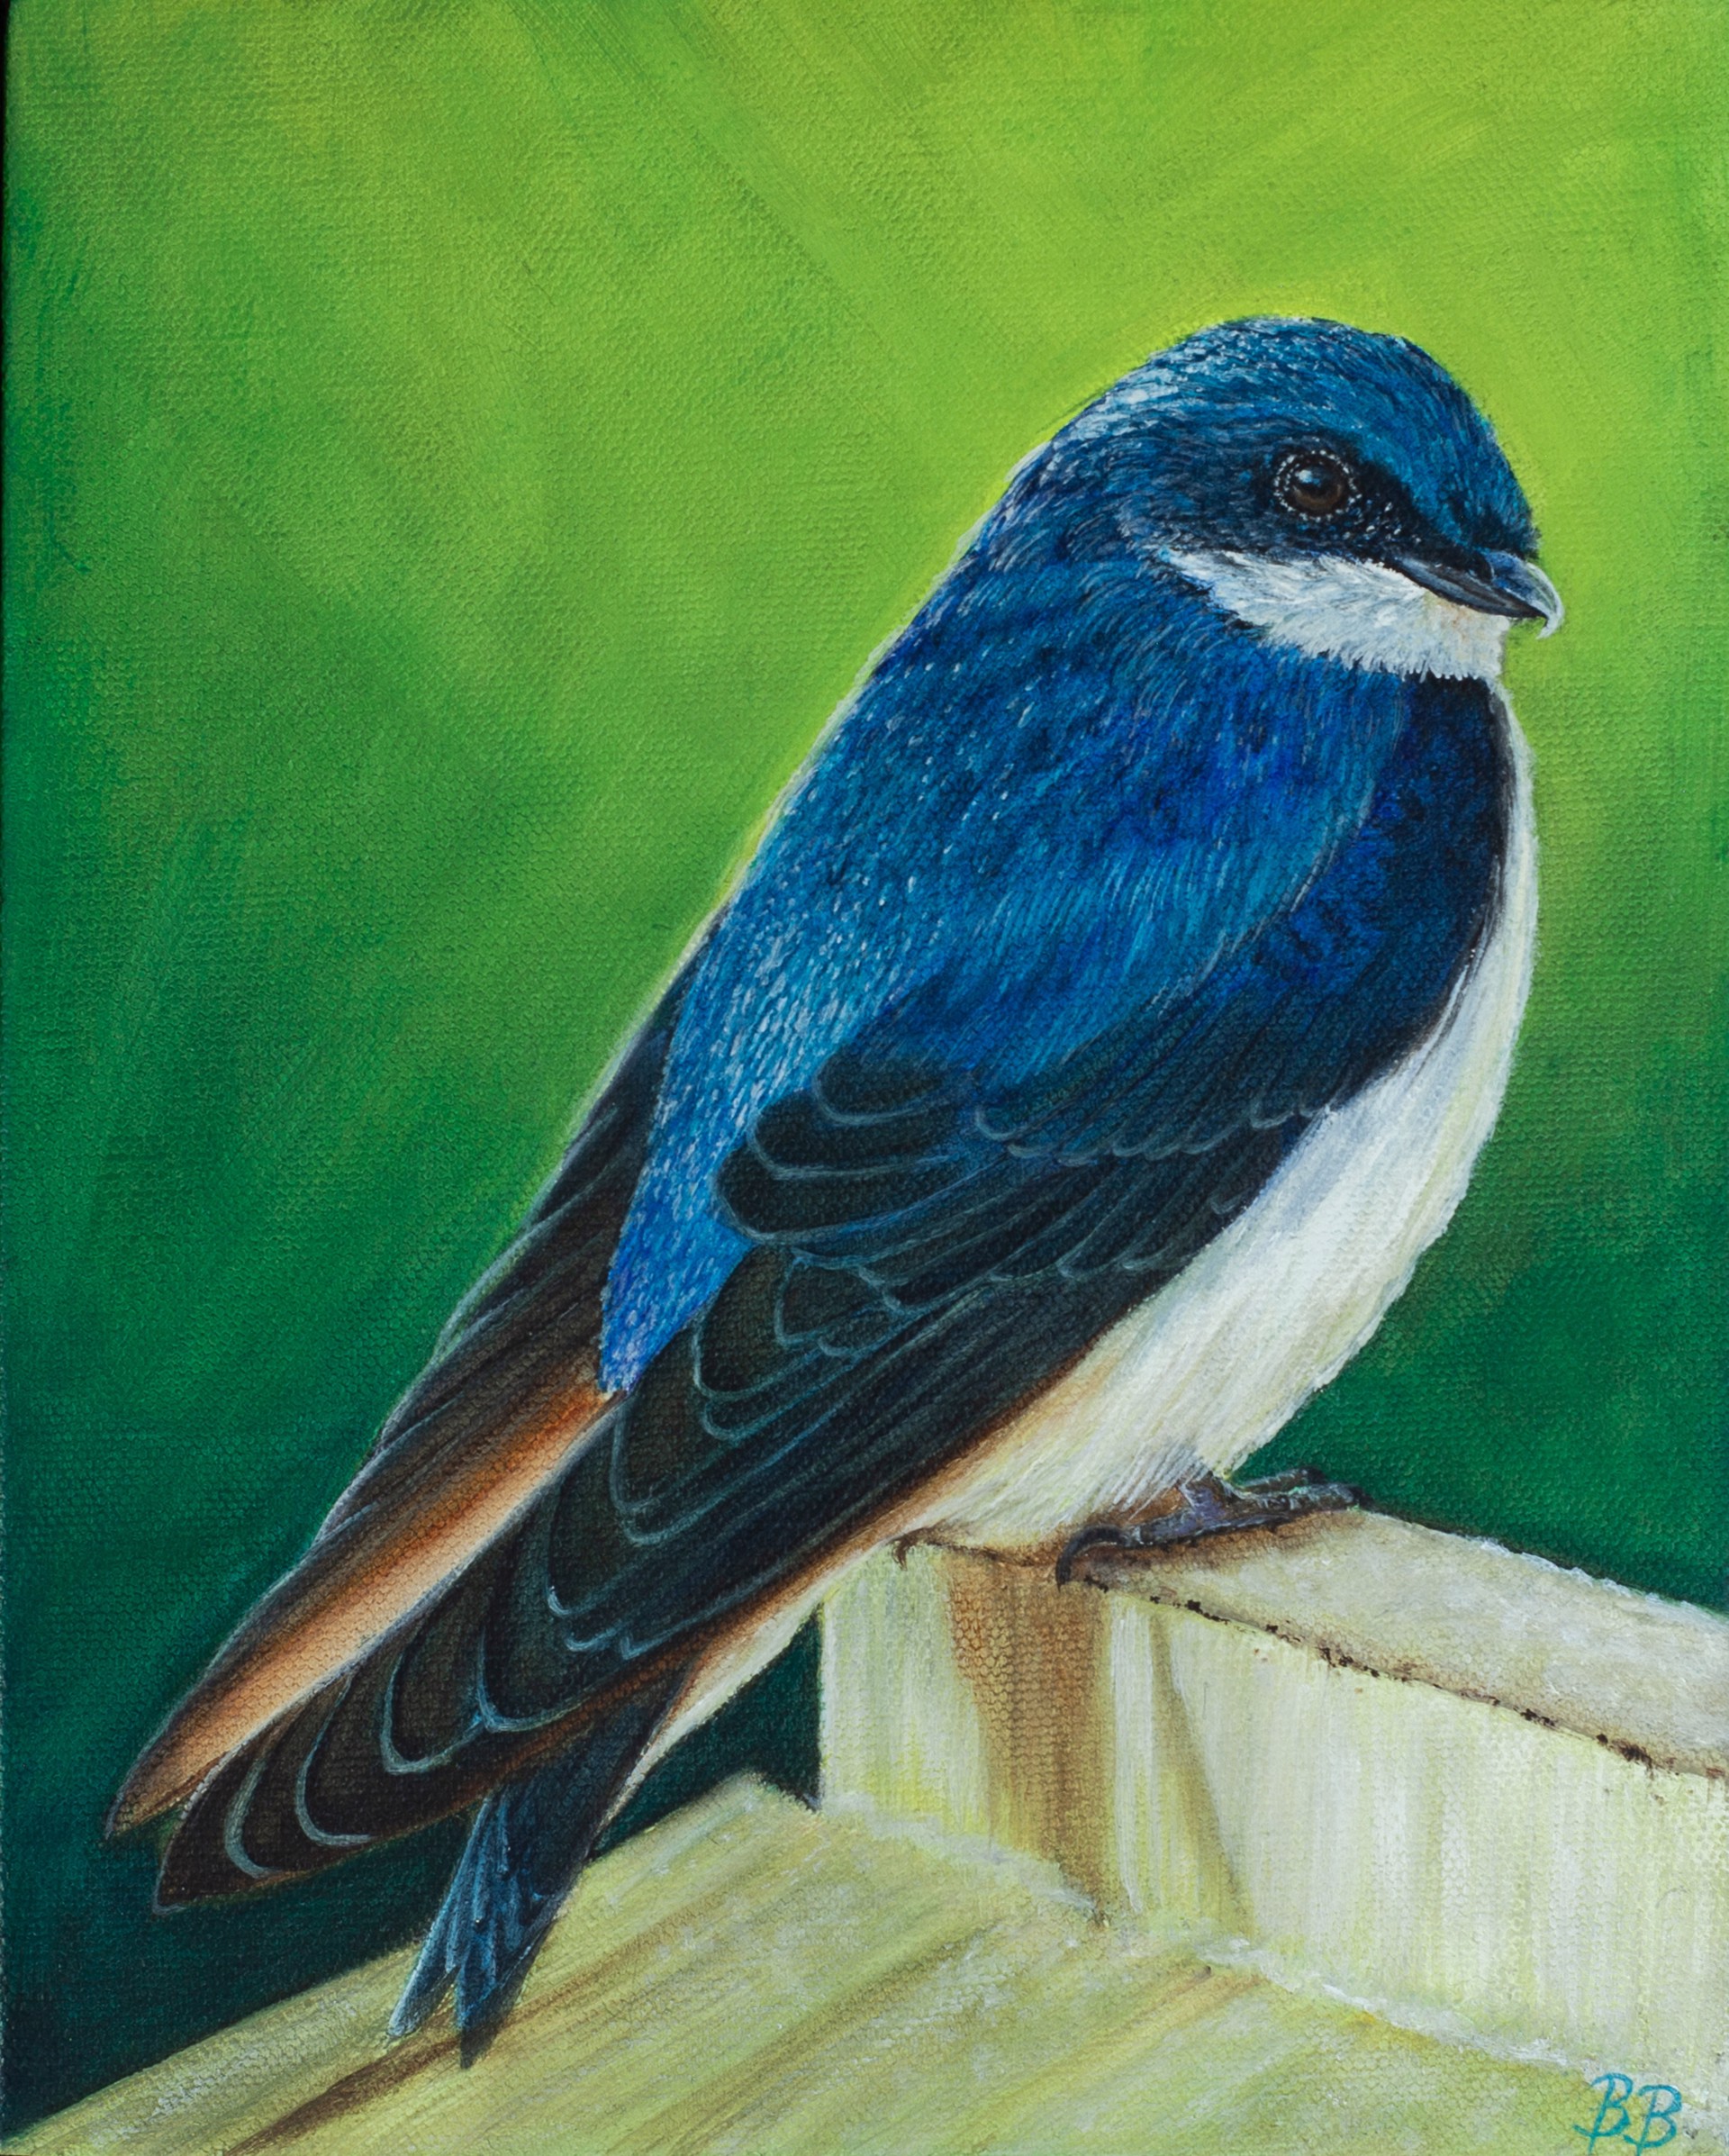 Tree Swallow by Bailey Burton